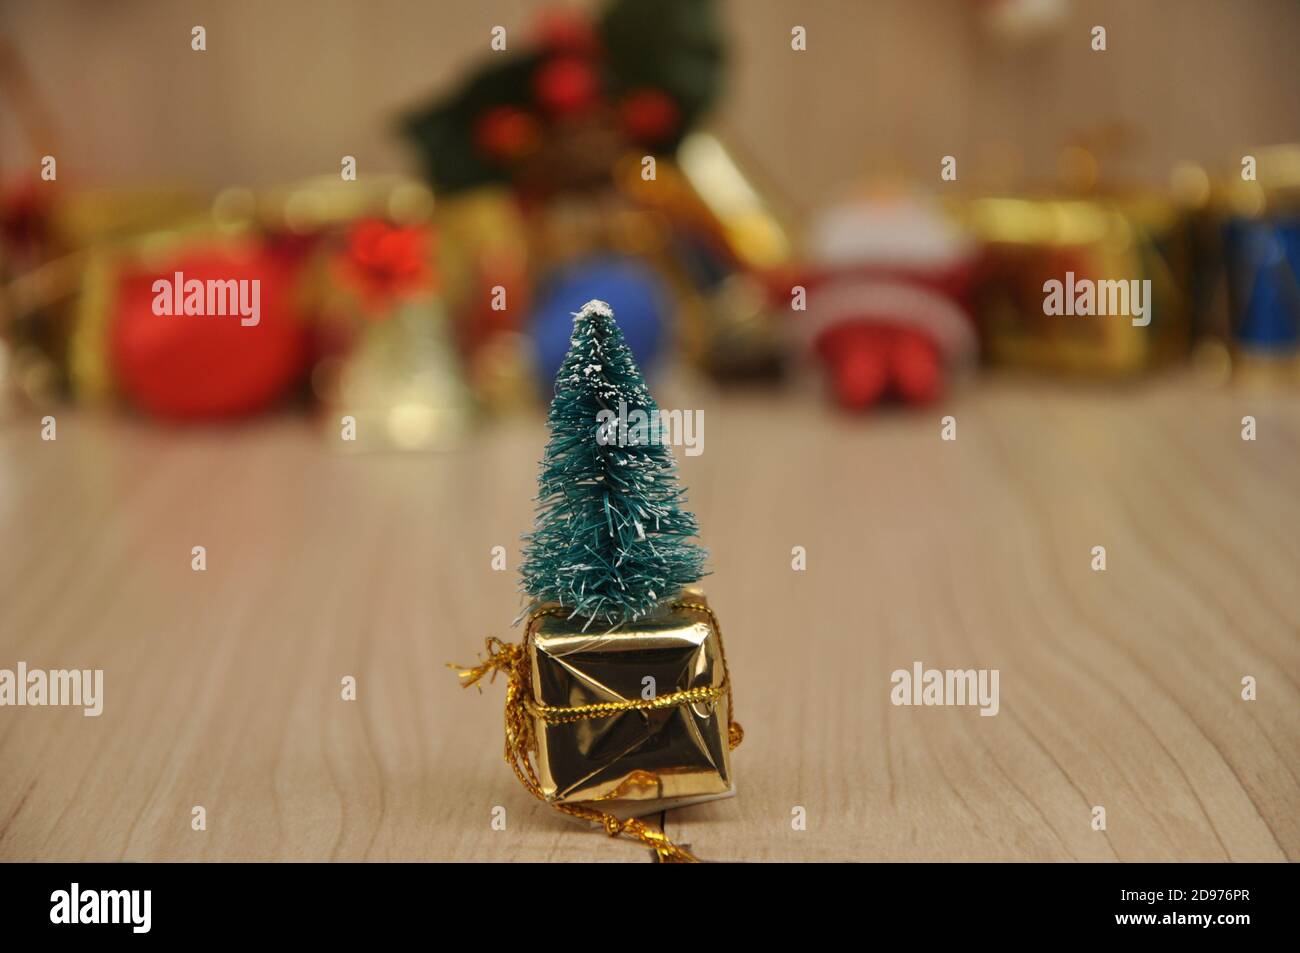 Arbre de Noël dans boîte cadeau, artisanat, arrière-plan coloré accessoires de Noël sur base en bois, Brésil, Amérique du Sud Banque D'Images